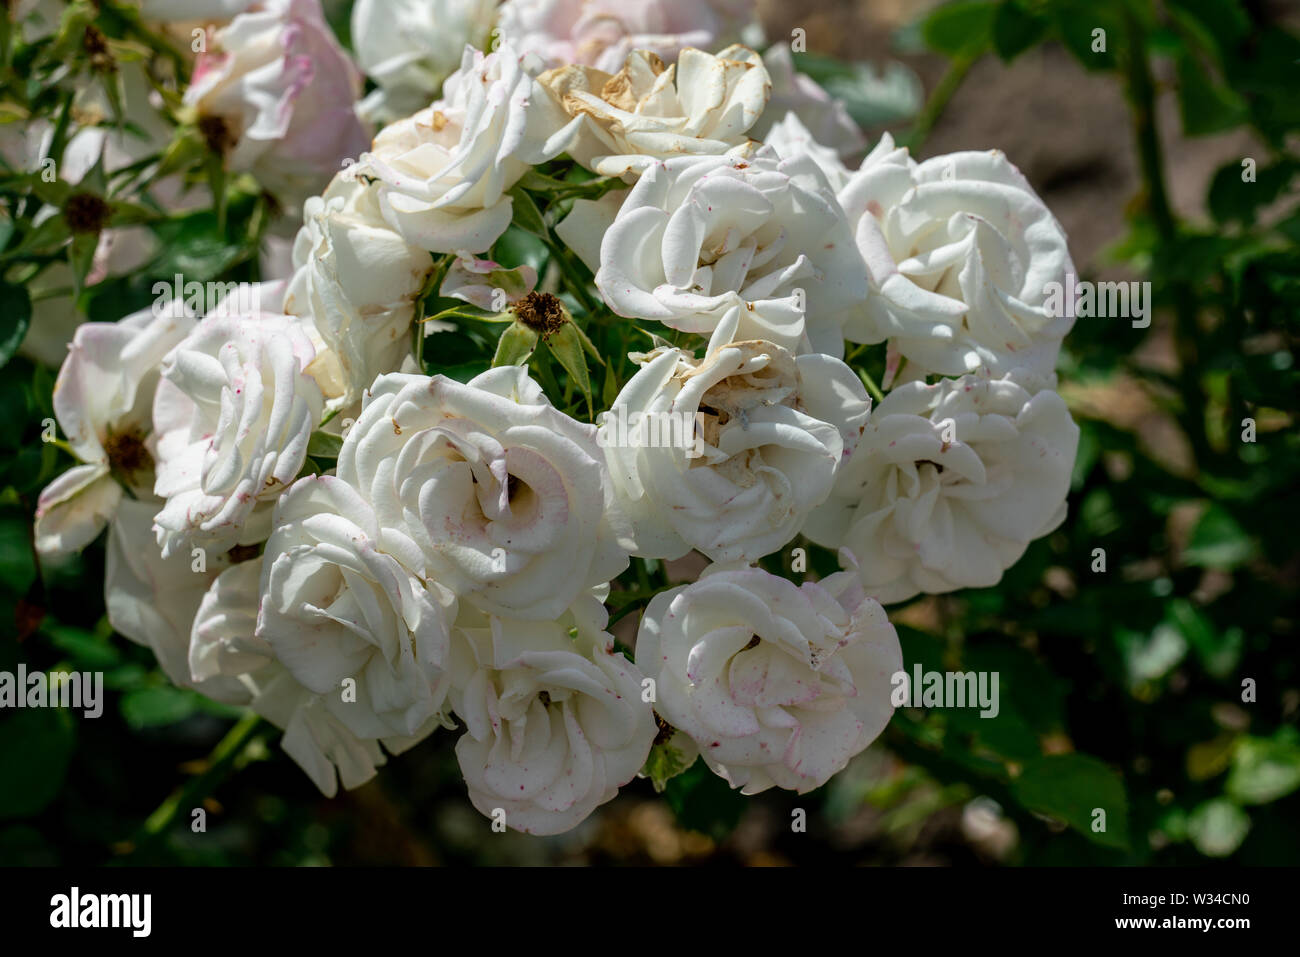 Schöne Nahaufnahme von mehrere weiße Rose Blume Köpfe der deutschen Ground Cover rose Aspirin mit bokeh Hintergrund und detaillierte Blütenblätter Stockfoto